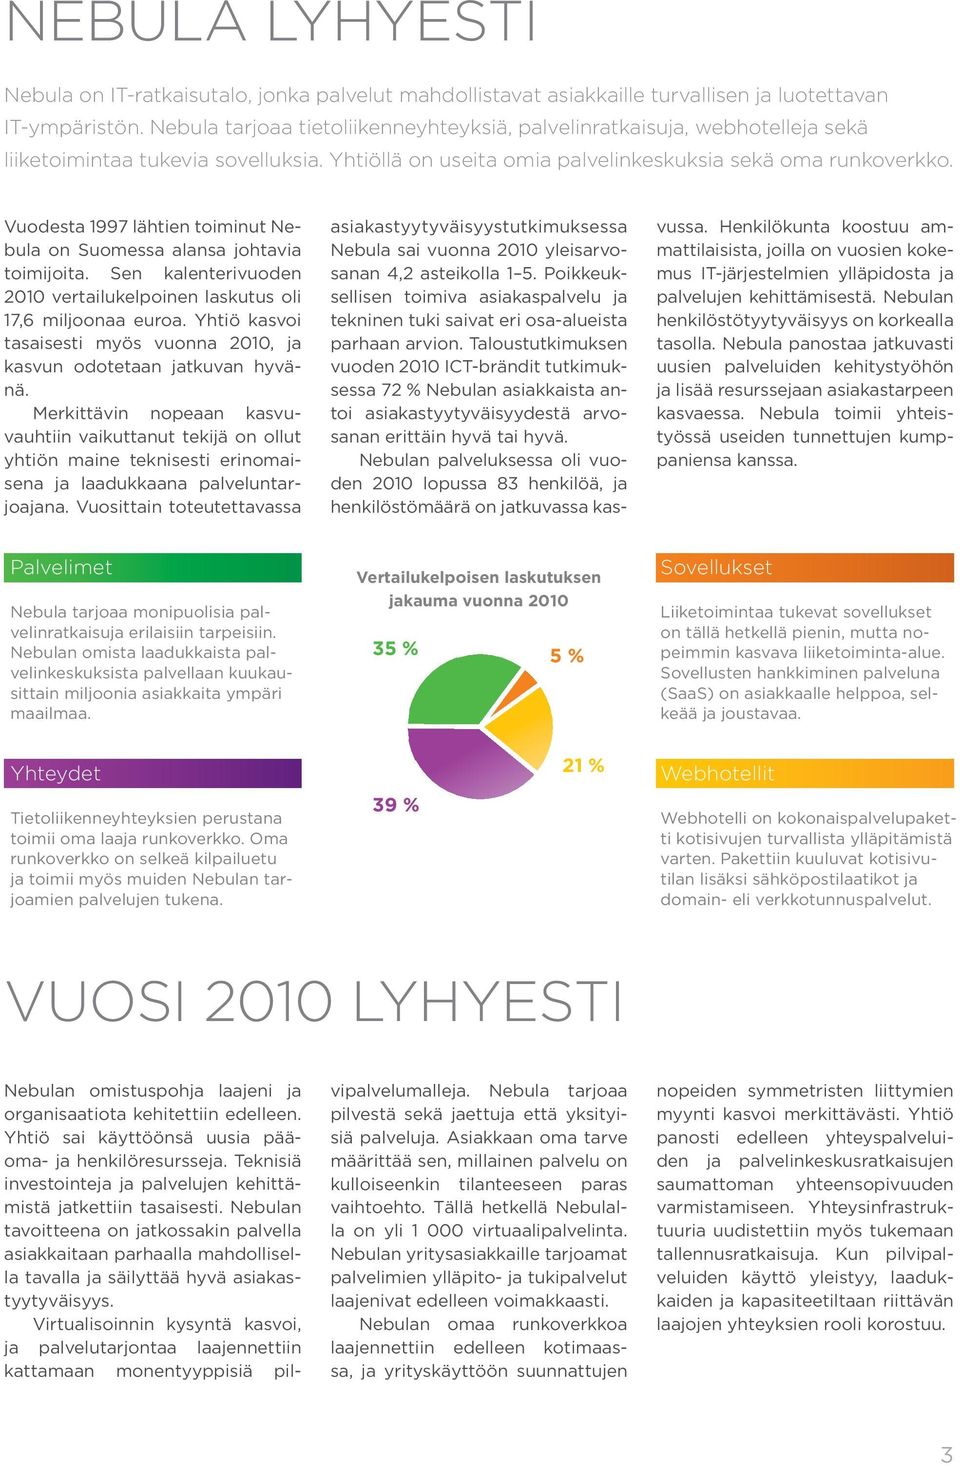 Vuodesta 1997 lähtien toiminut Nebula on Suomessa alansa johtavia toimijoita. Sen kalenterivuoden 2010 vertailukelpoinen laskutus oli 17,6 miljoonaa euroa.